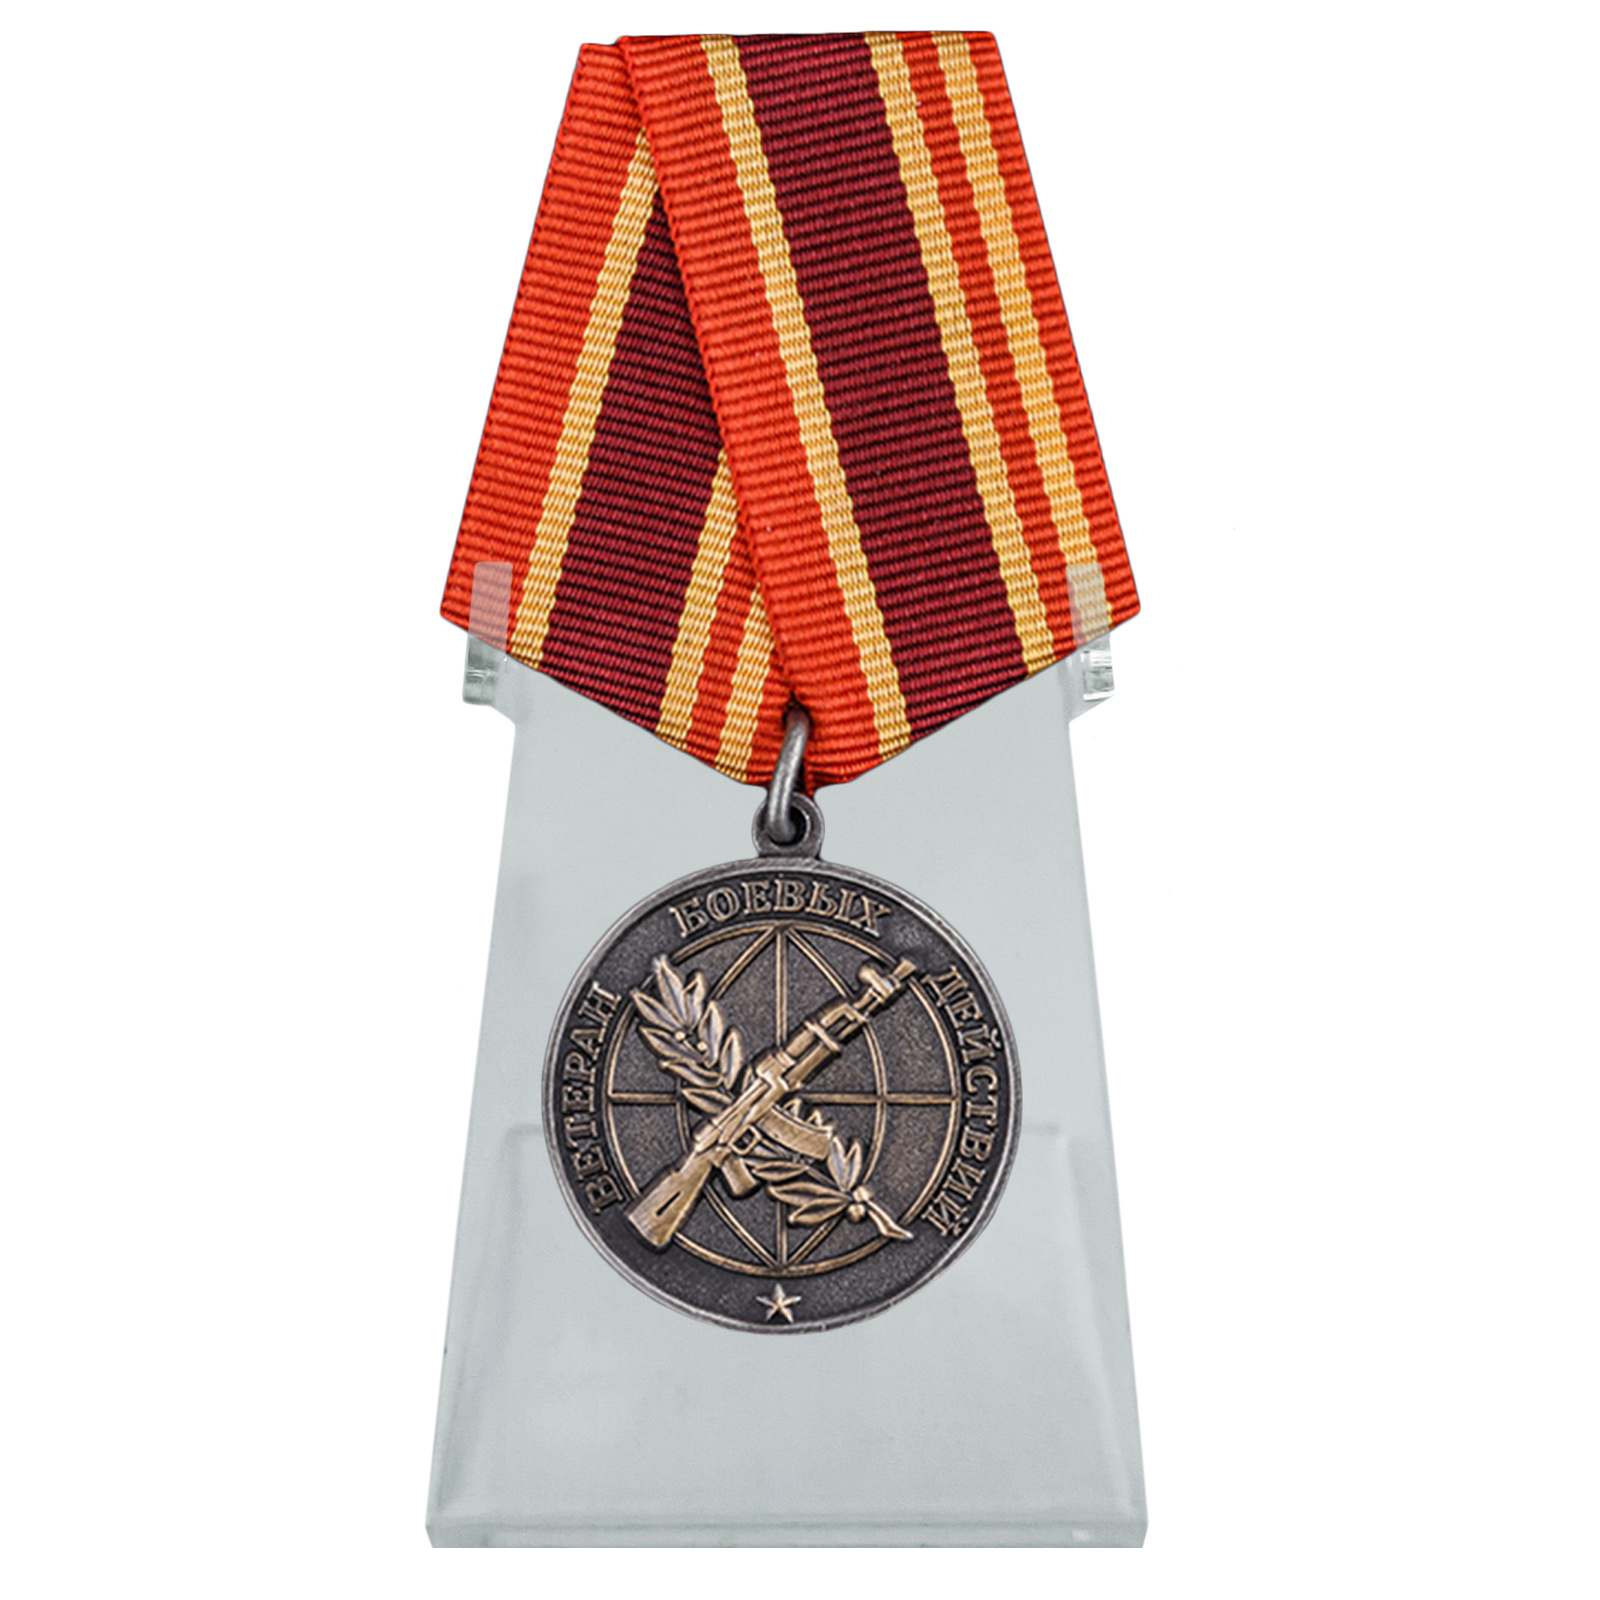 Общественная медаль "Ветеран боевых действий" на подставке